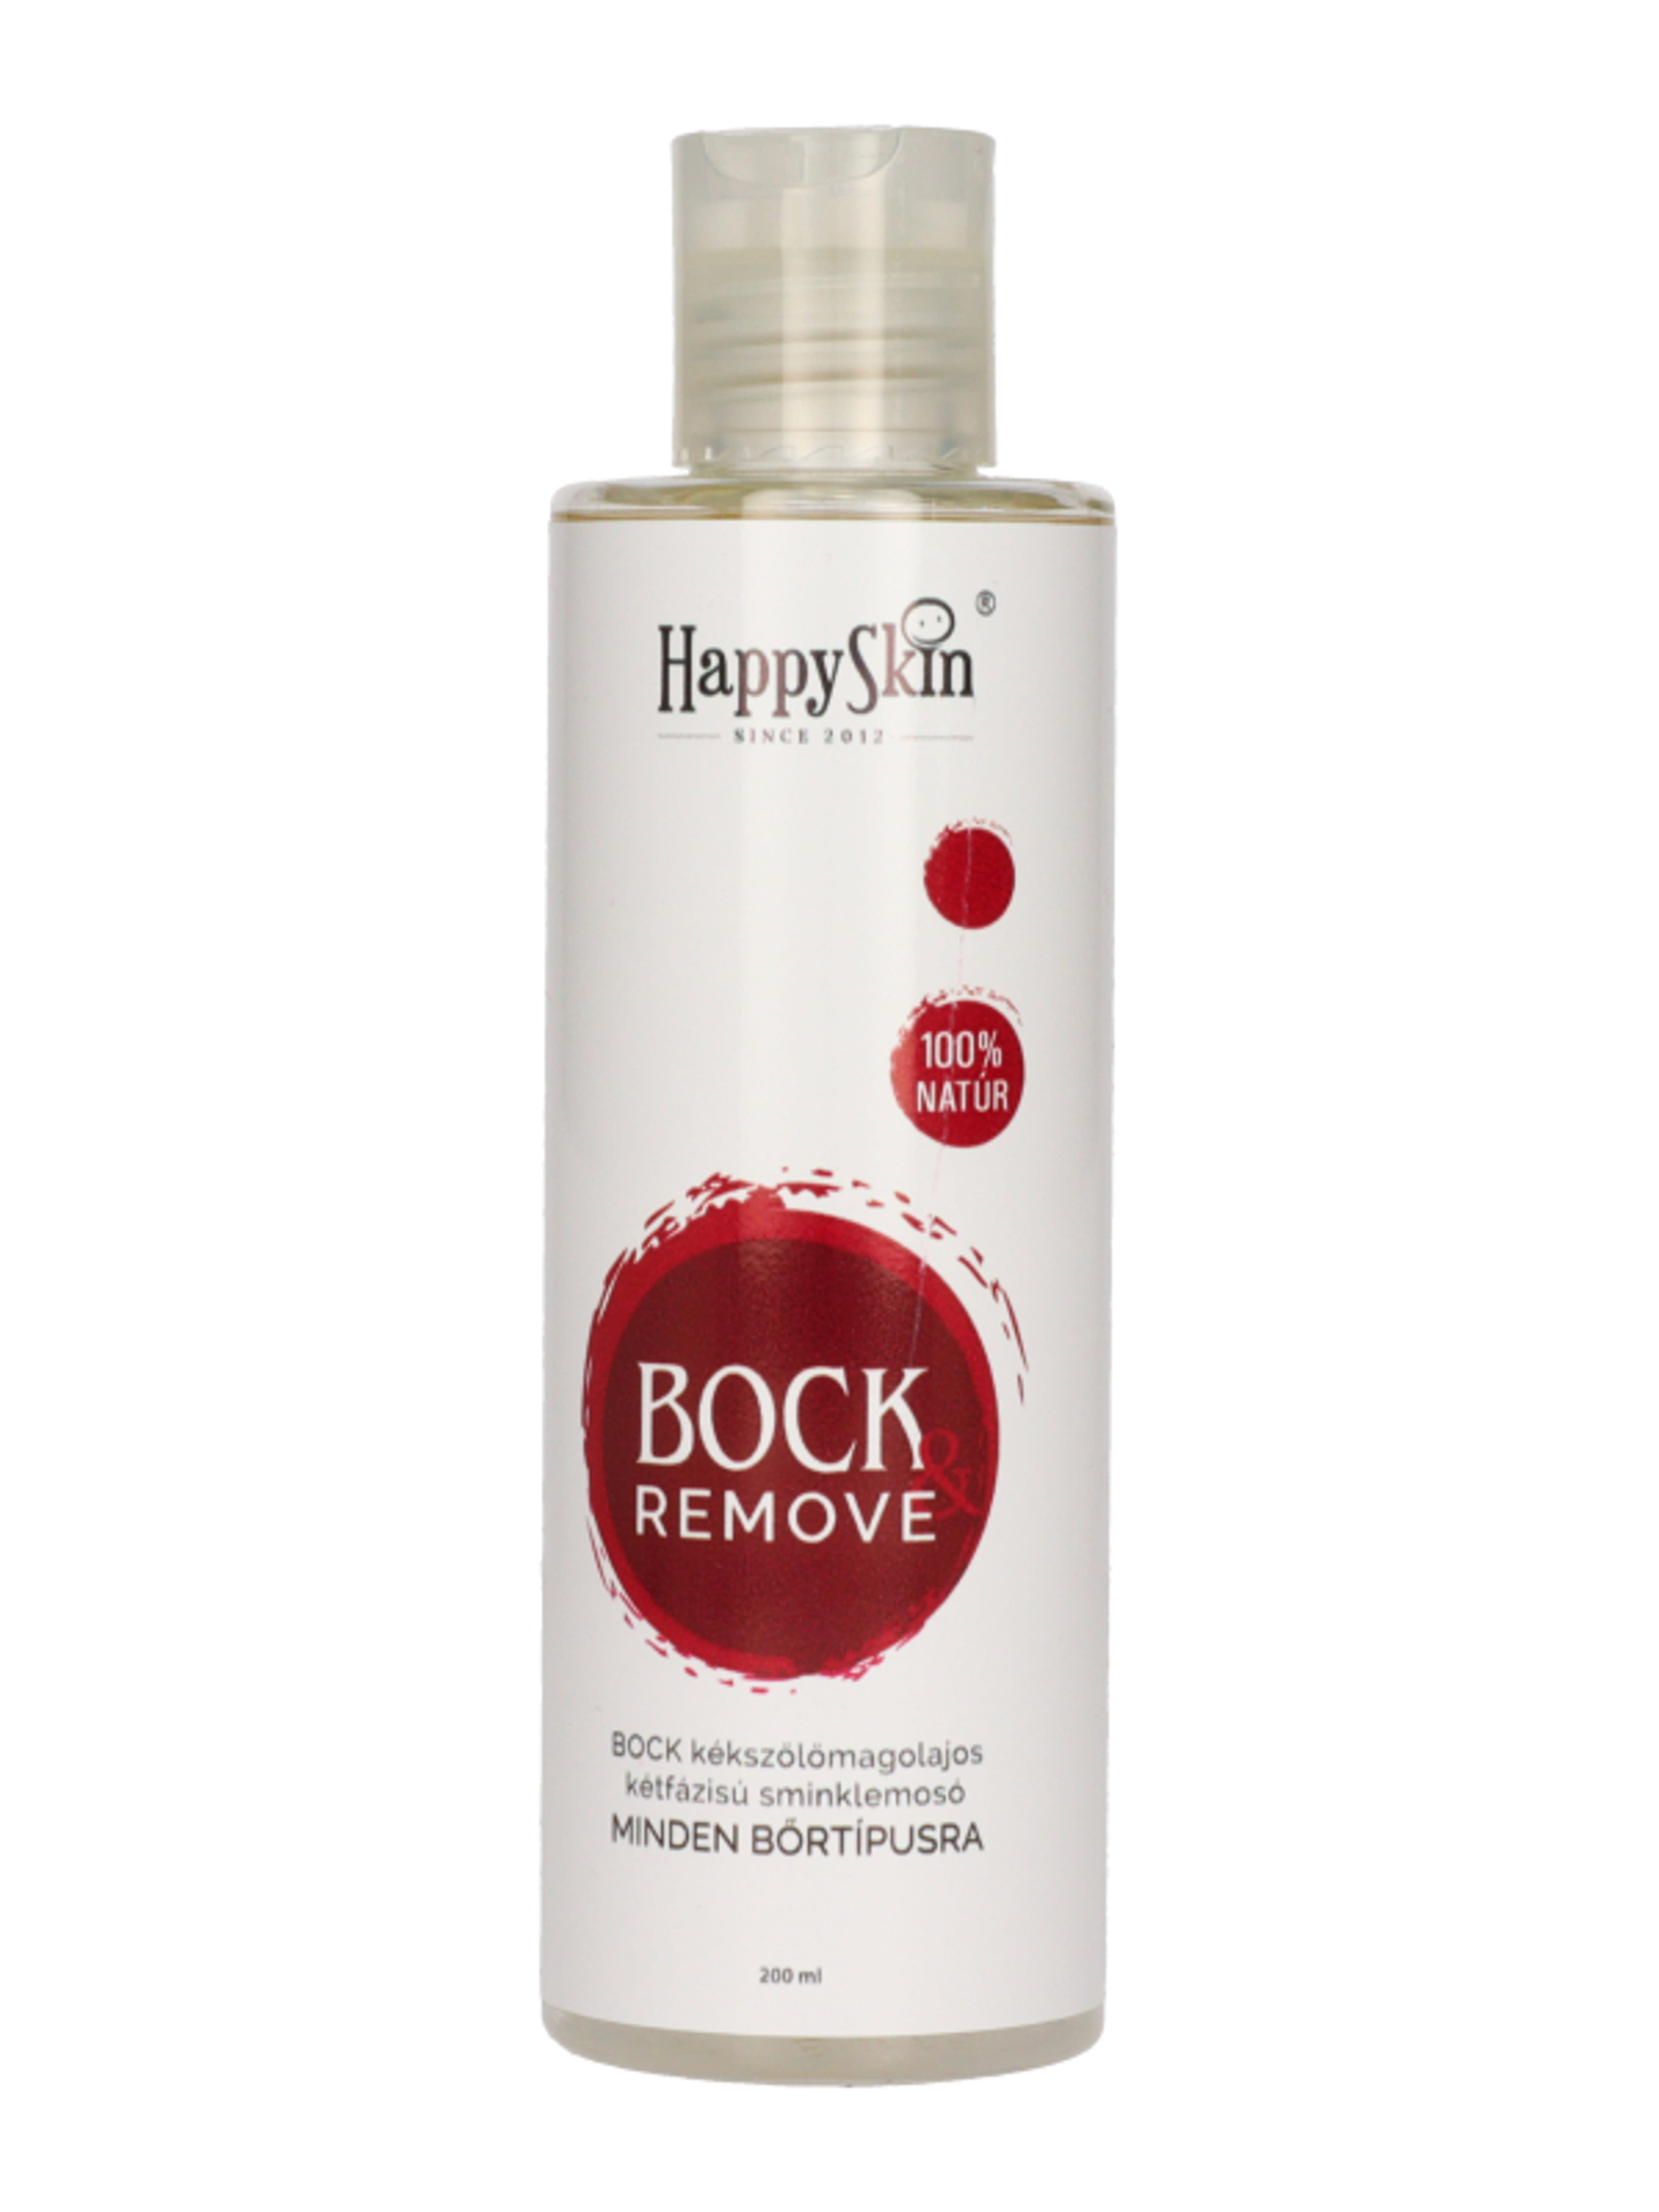 HappySkin Bock Remove kétfázisú sminklemosó - 200 ml